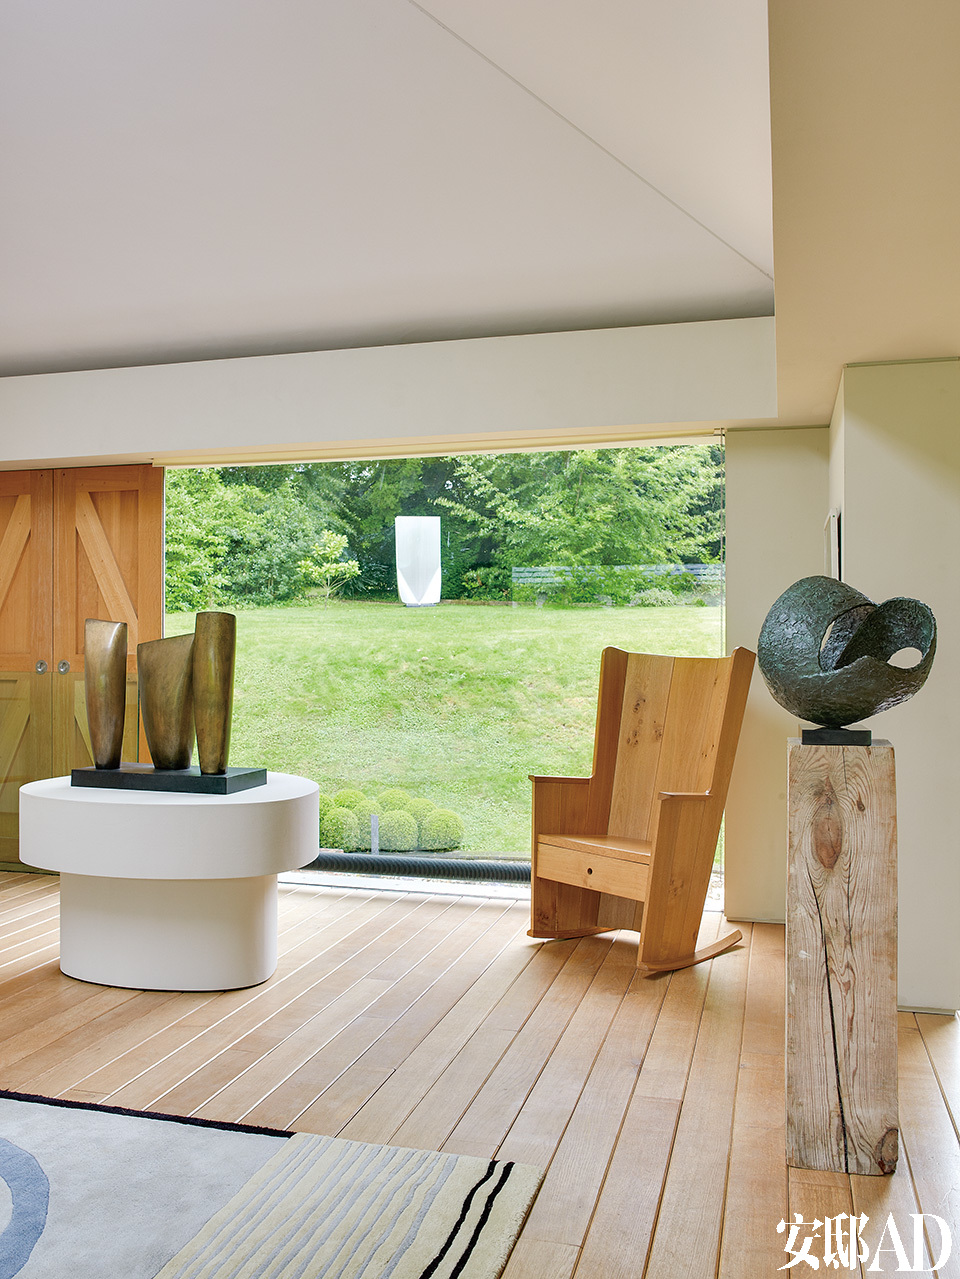 “ 艺术家之家”更像一个原始森林里温馨的小木屋。英国设计师Matthew Hilton的Irish橡木椅，右边为芭芭拉·赫普沃斯（BarbaraHepworth）的《Involute II》；左边黄铜装置同样是芭芭拉的作品《Three Forms》。这些艺术品想要让人过回简单古朴的自然生活。让艺术品更舒适地展现在一个“家”一样的空间里，告诉大家如何与艺术品共同生活，而不仅仅是站在那里静静地观赏而已。